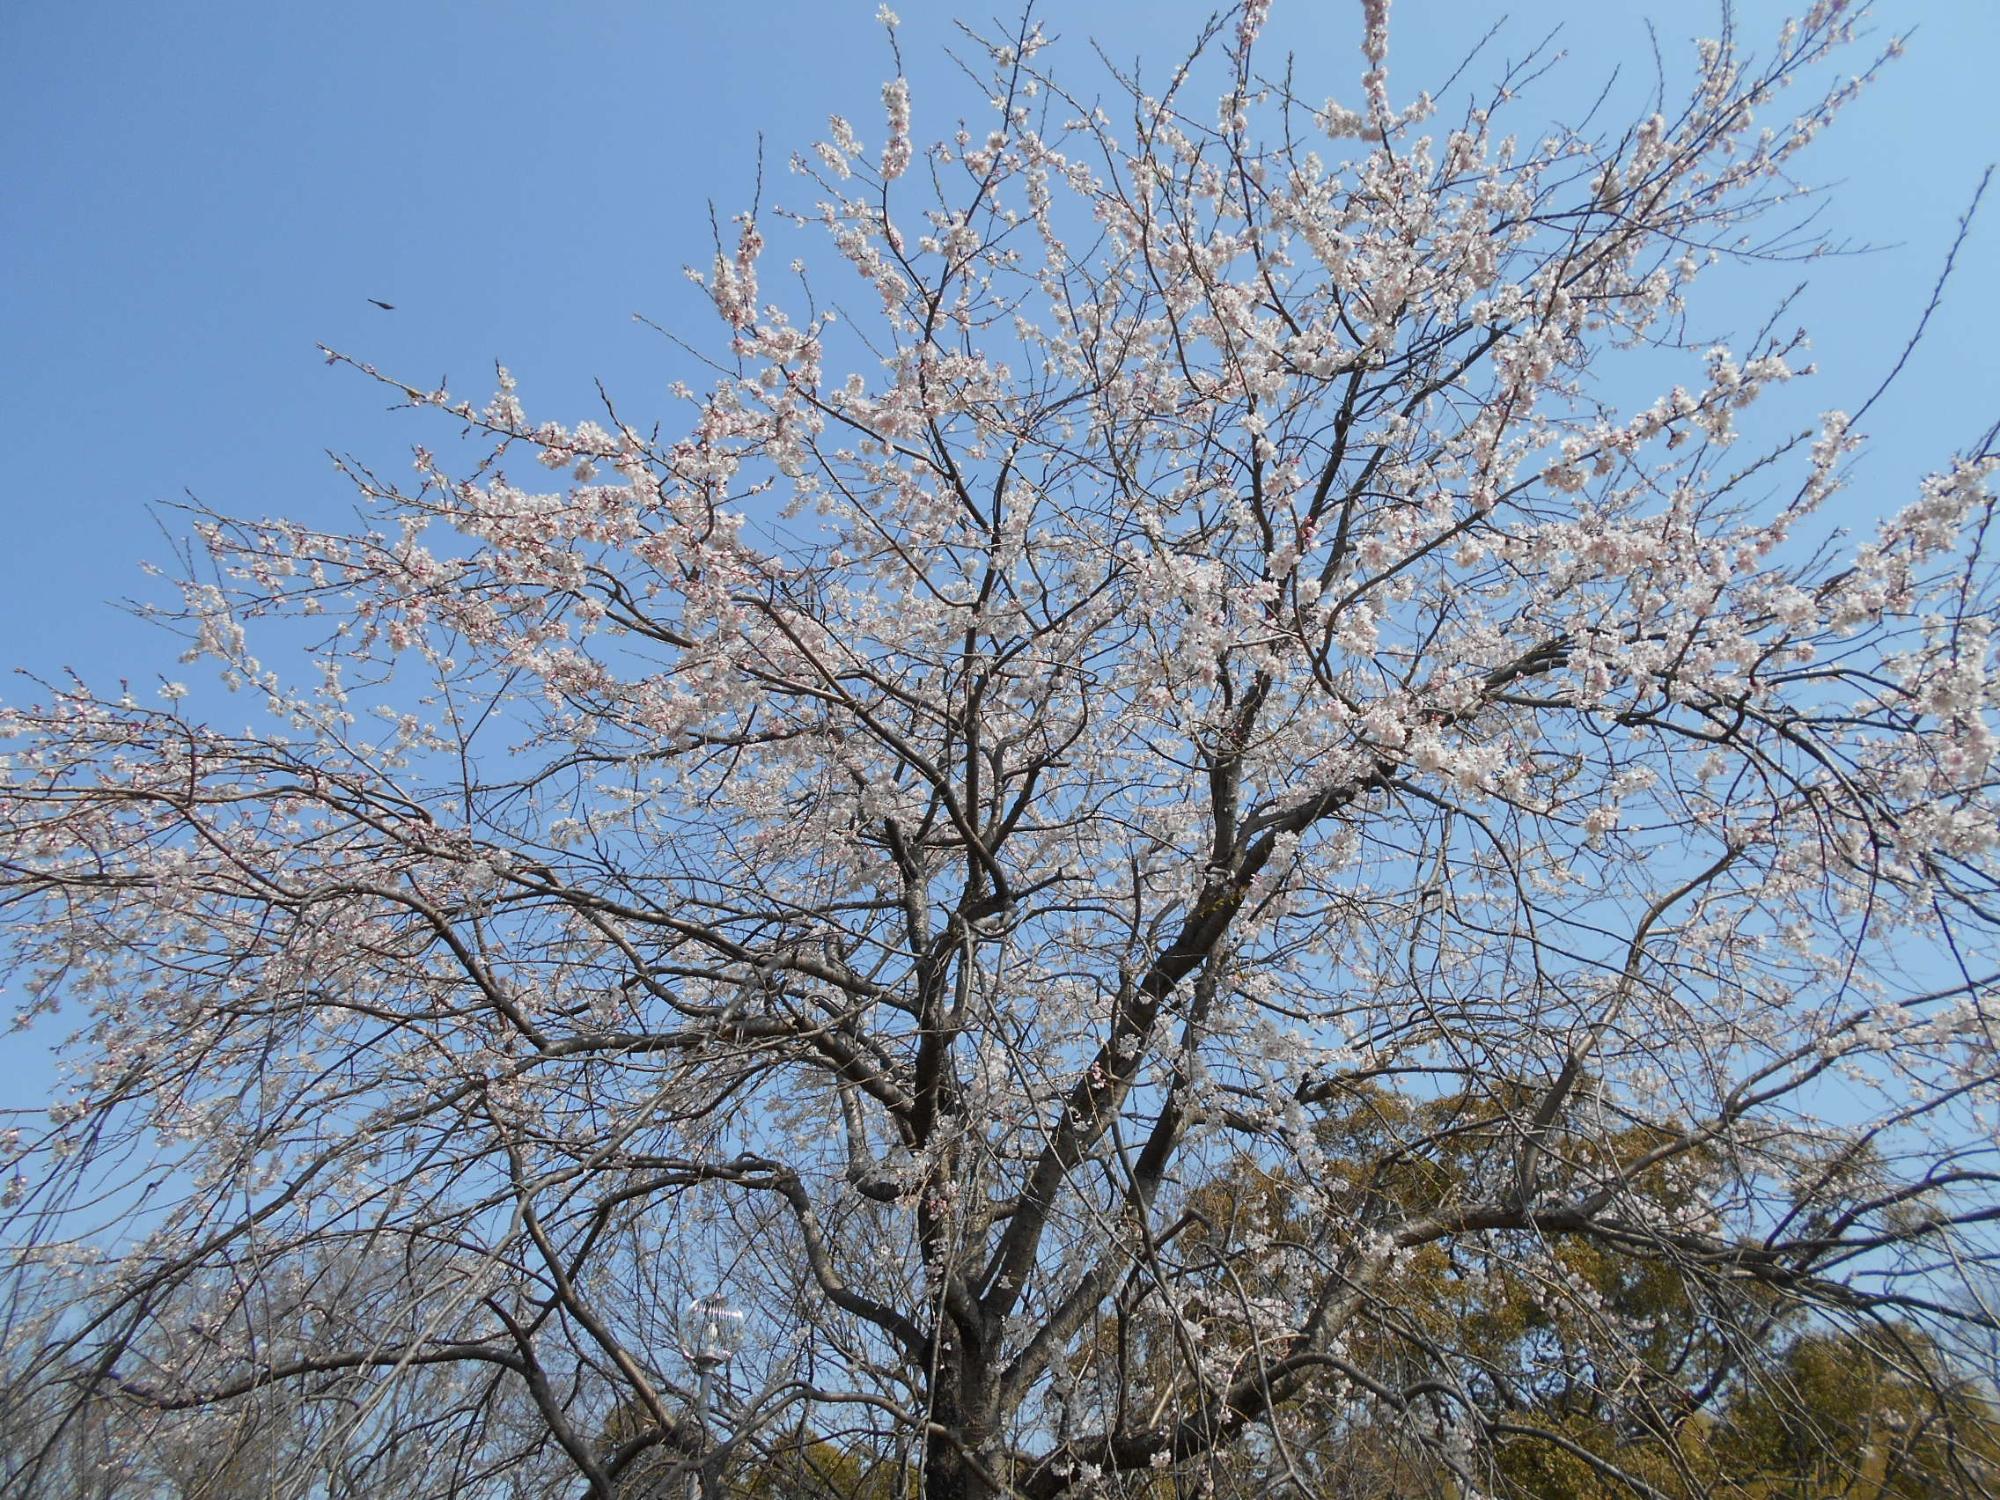 中池ちかくの一角には、町制50周年記念で植栽された枝垂れ桜(白)の大木があり、5分咲きとなっています。